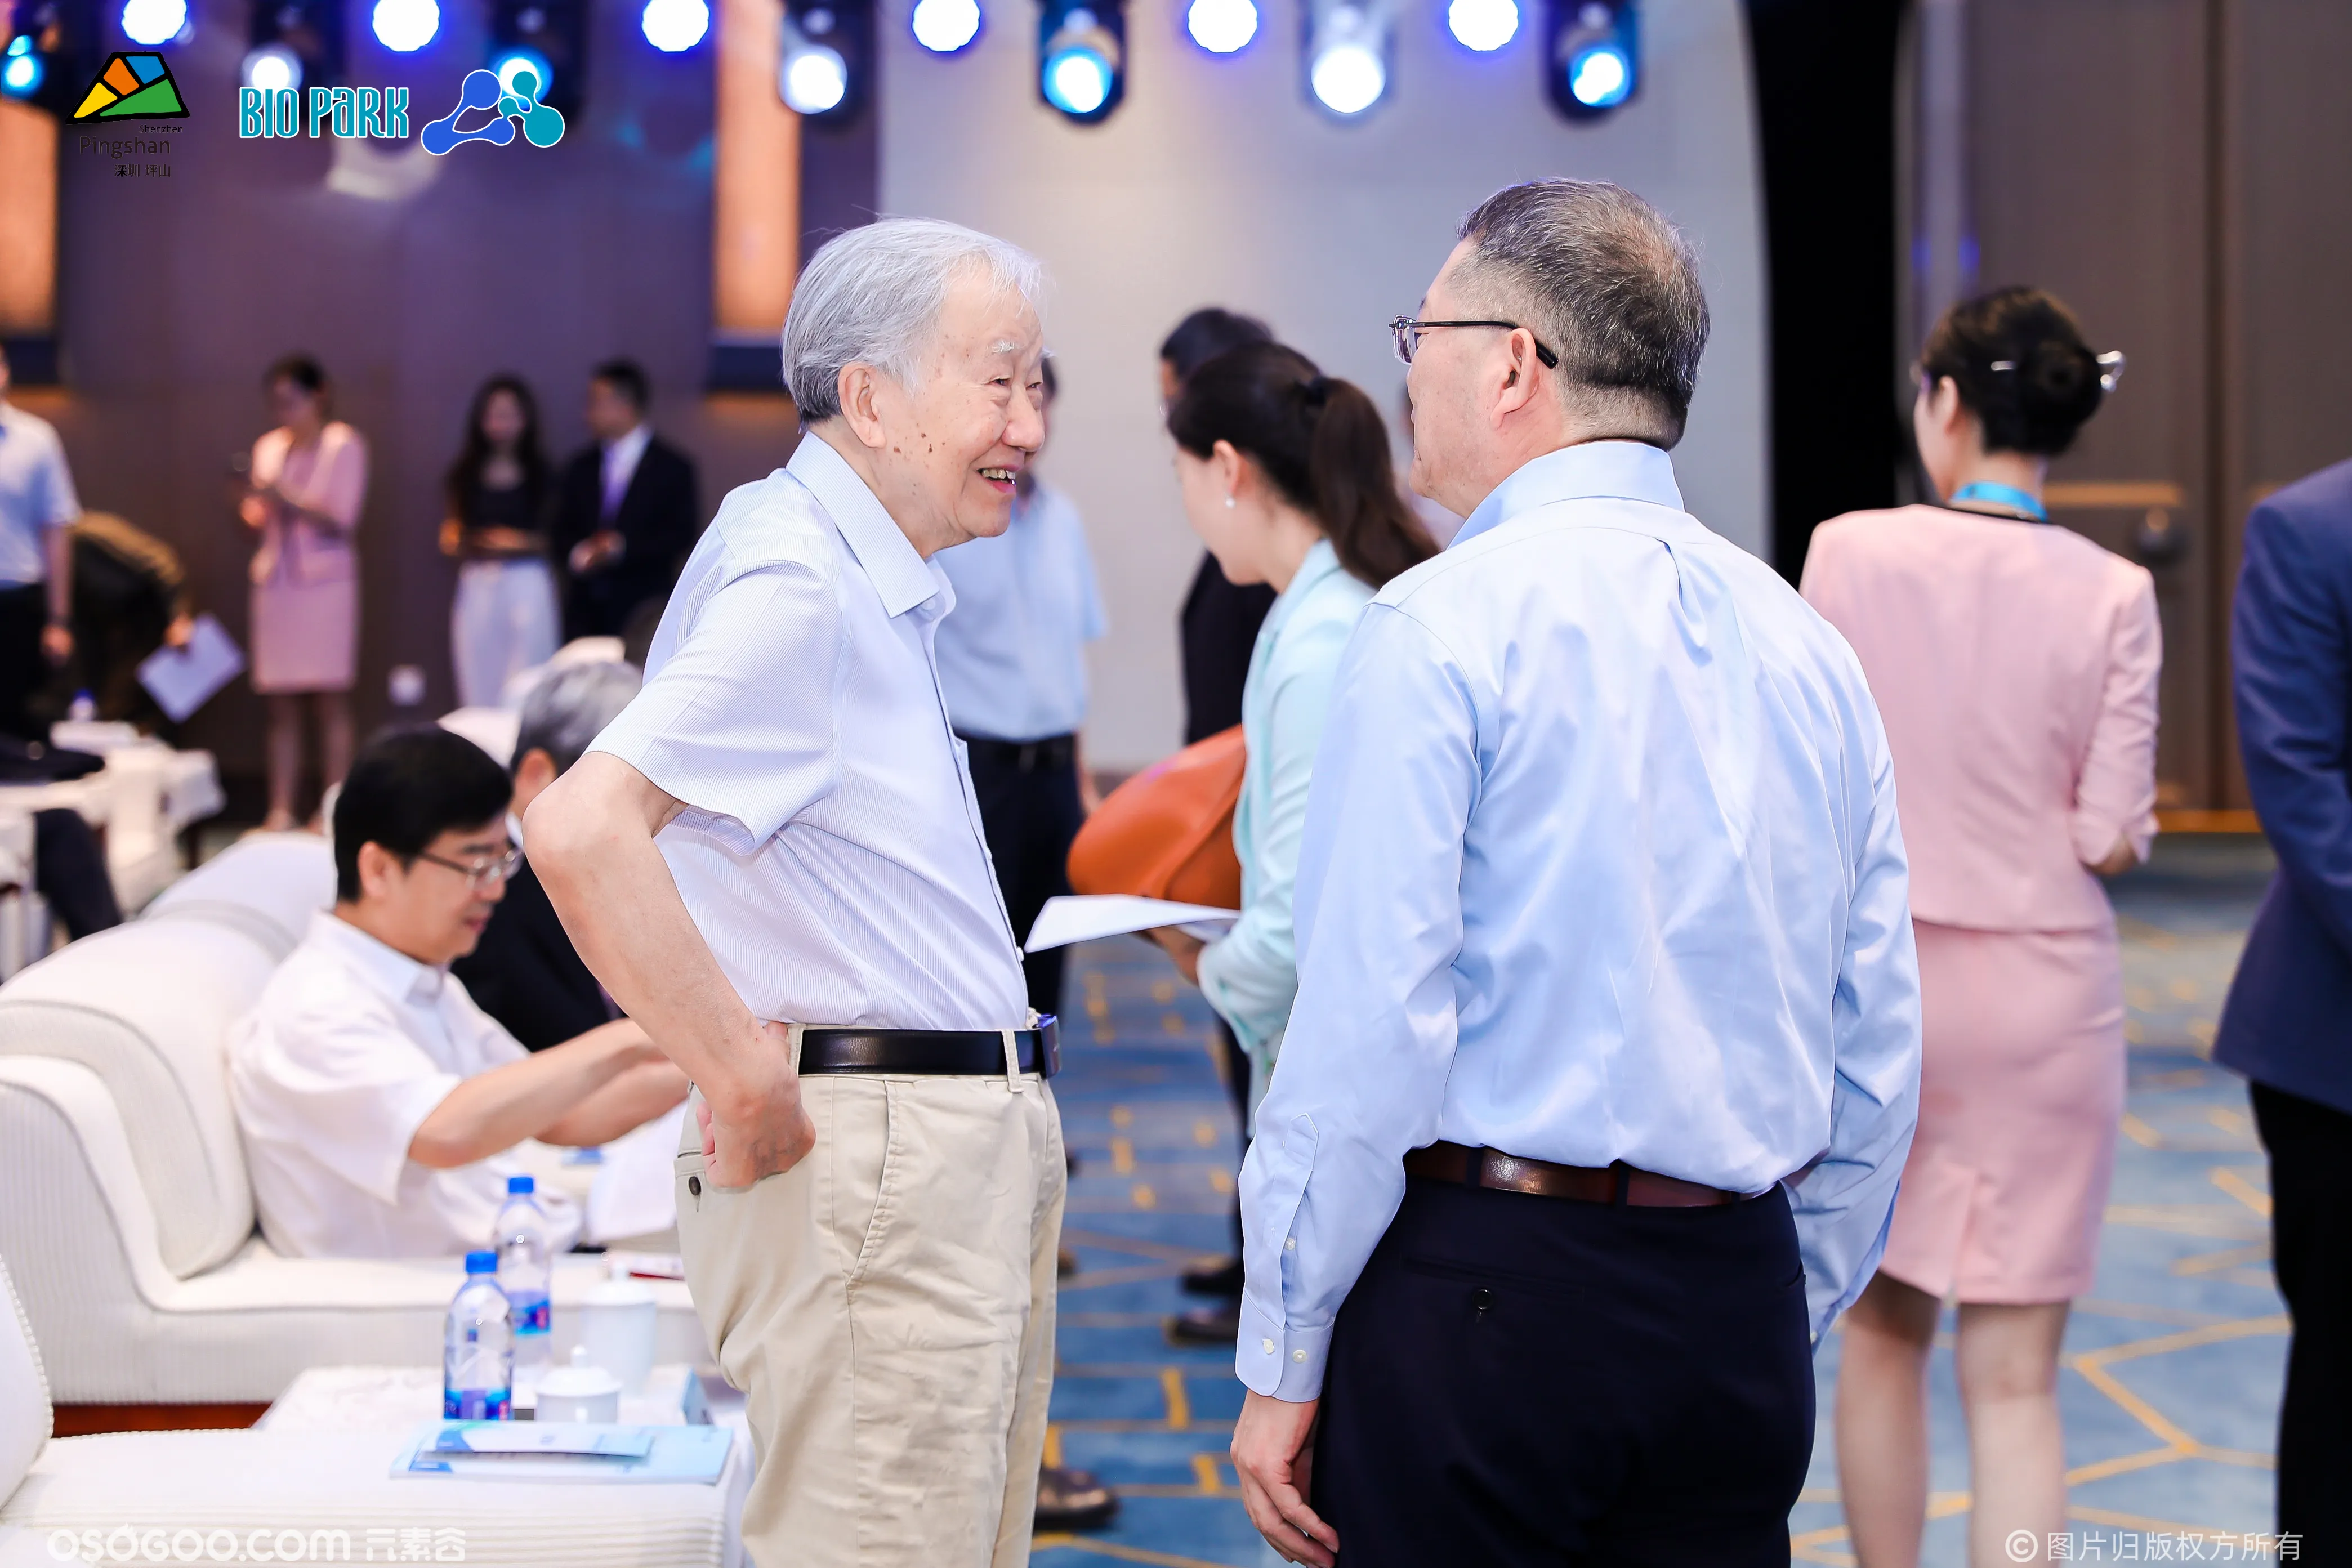 2023深圳国际生物医药产业创新发展大会